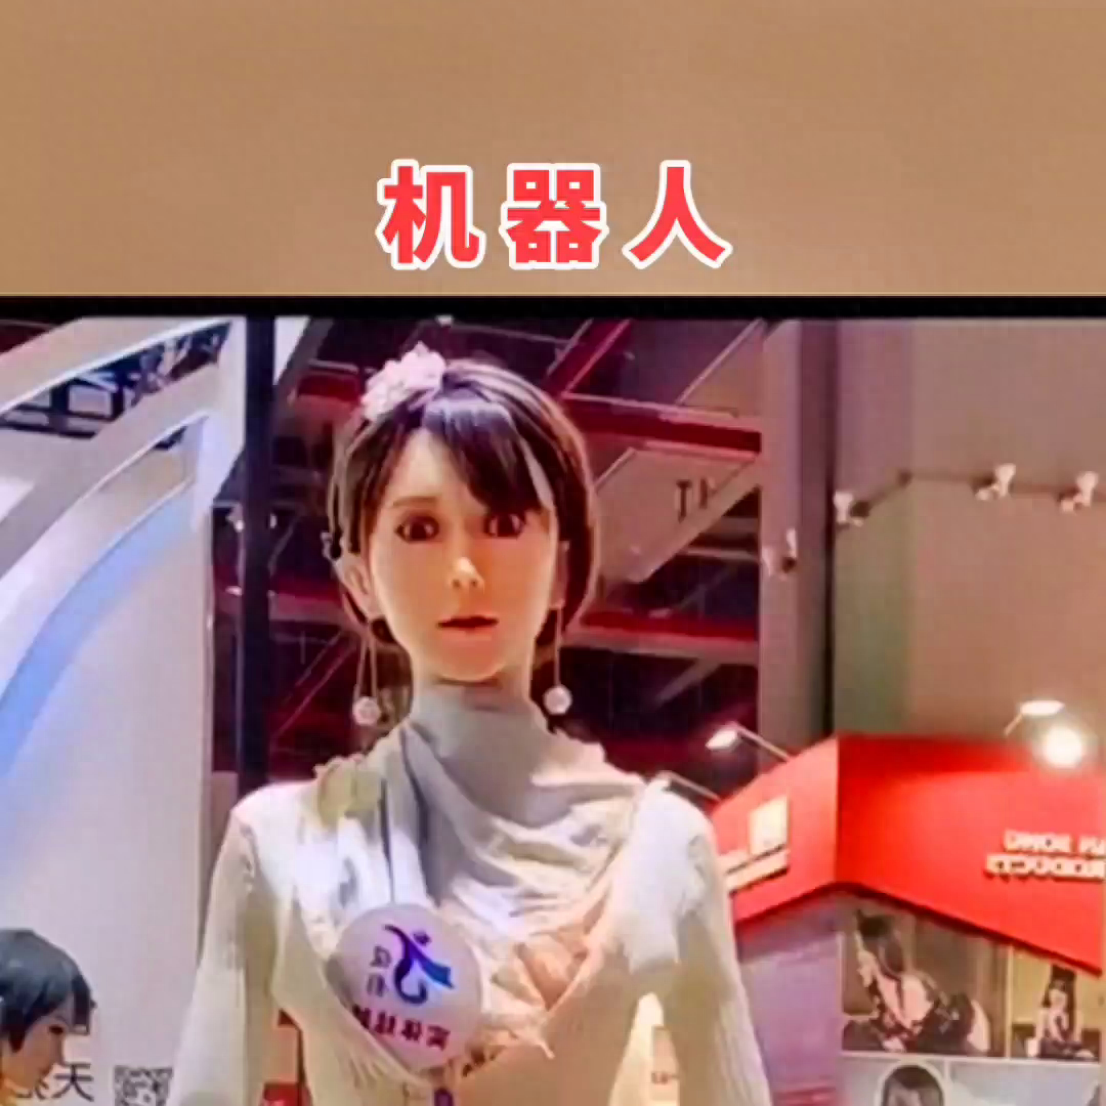  网易新闻，在上海WF展上展出的一款仿真女性硅胶娃娃引起了众人关注。其细致的工艺使得硅胶娃娃几乎看起来像真人一样，甚至连微小的细节也被再现，血管甚至肌肉的纹理都能看到